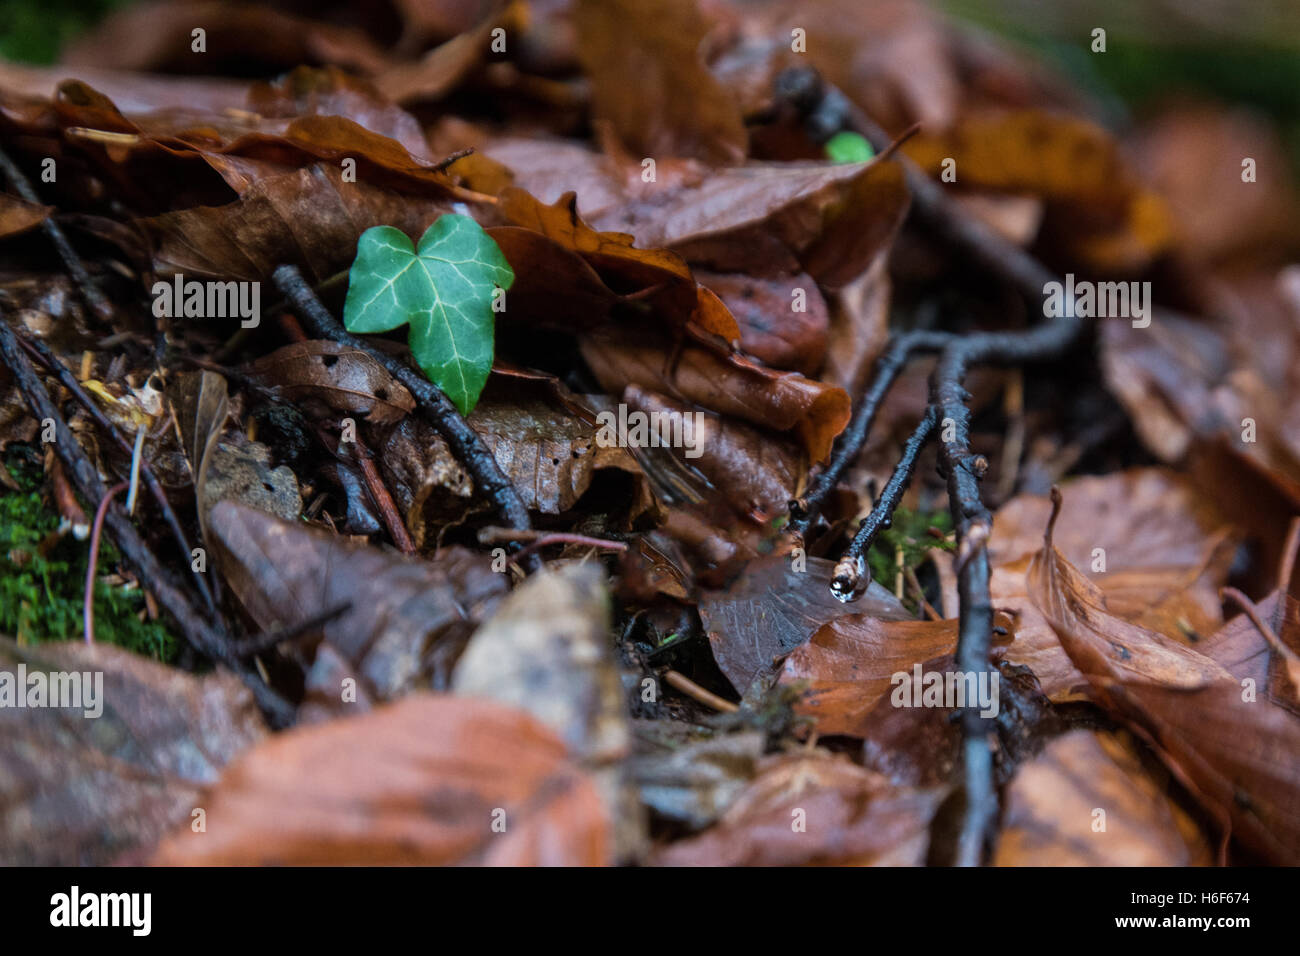 Un gingle foglia verde che cresce in un mare di foglie di colore marrone Foto Stock